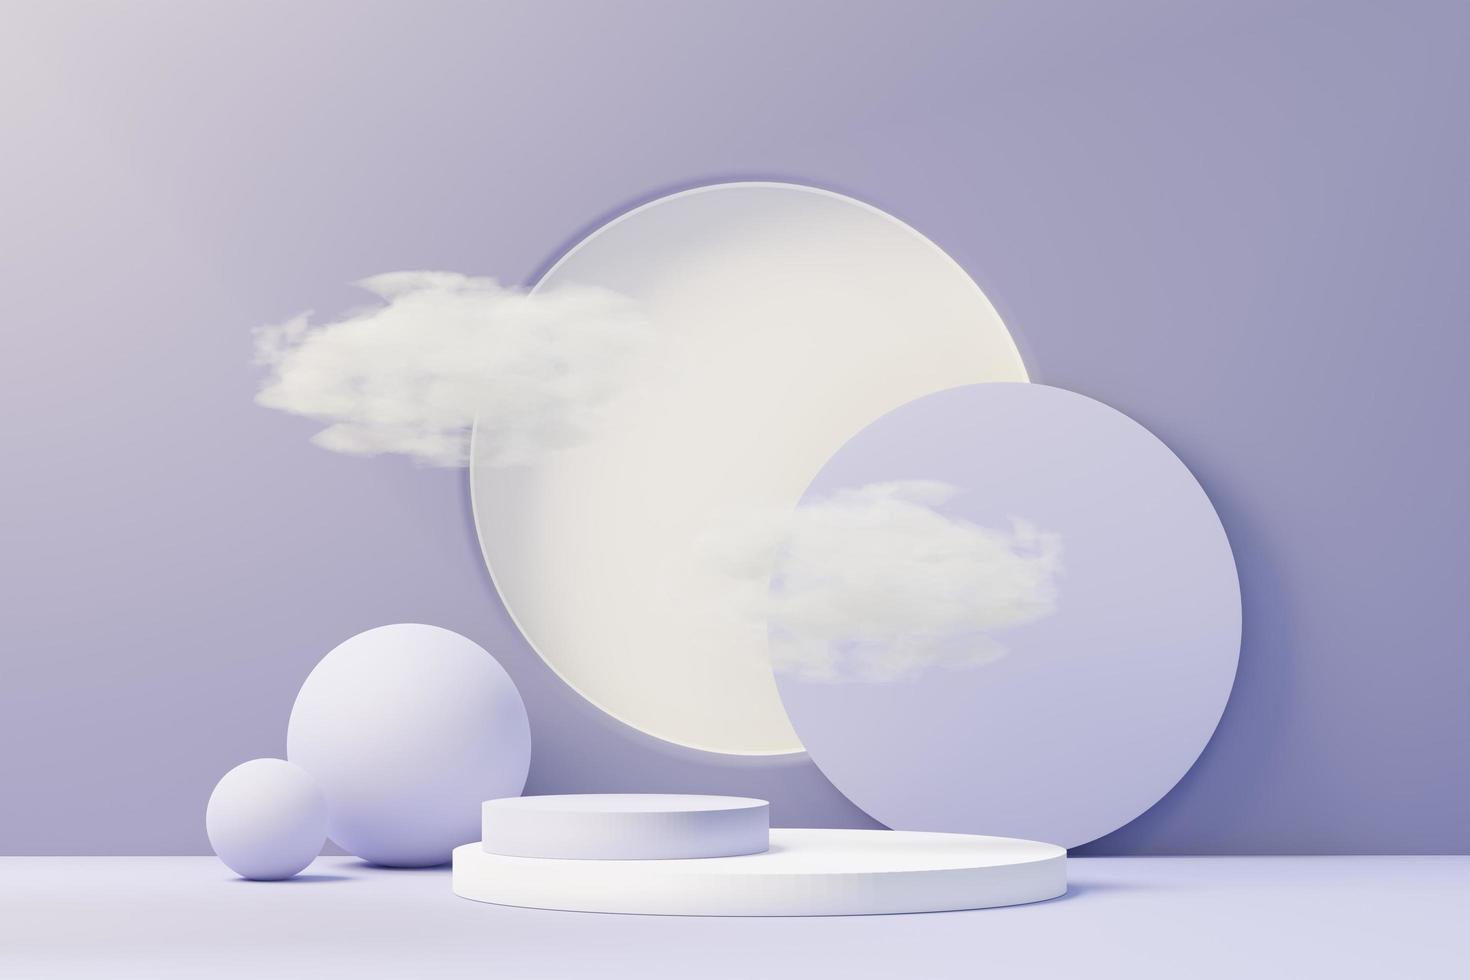 3D-Darstellung des Beauty-Podiums mit sehr Peri-Farbe des Jahres 2022 Design für Produktpräsentation und Werbung. Minimaler Pastellhimmel und verträumte Landszene. Romantik-Konzept. foto